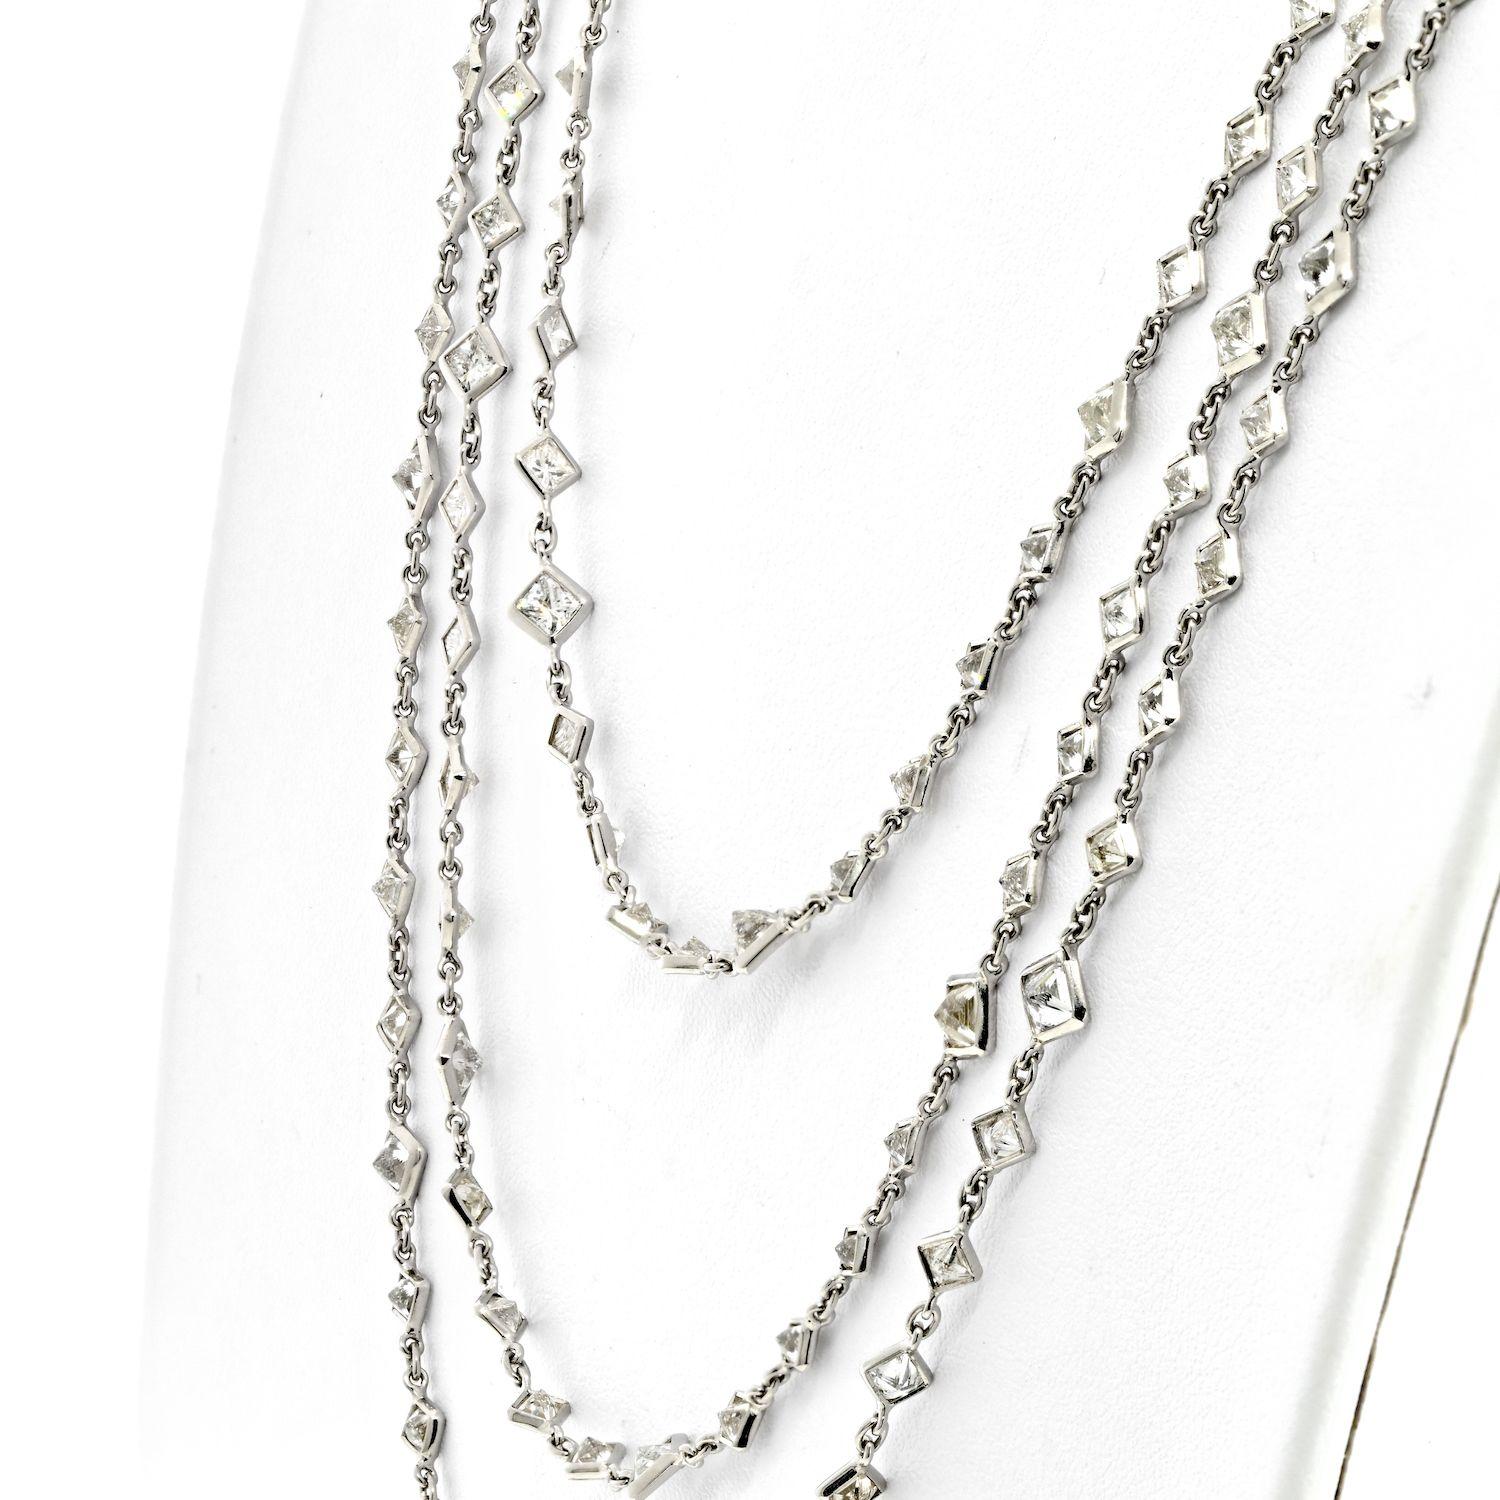 Die Diamond by the Yard Chain Necklace aus Platin ist ein luxuriöses und beeindruckendes Schmuckstück. Diese 76 Zoll lange Halskette ist mit 234 Diamanten im Prinzess-Schliff besetzt, die sauber gefasst sind und eine farblose Qualität aufweisen, die